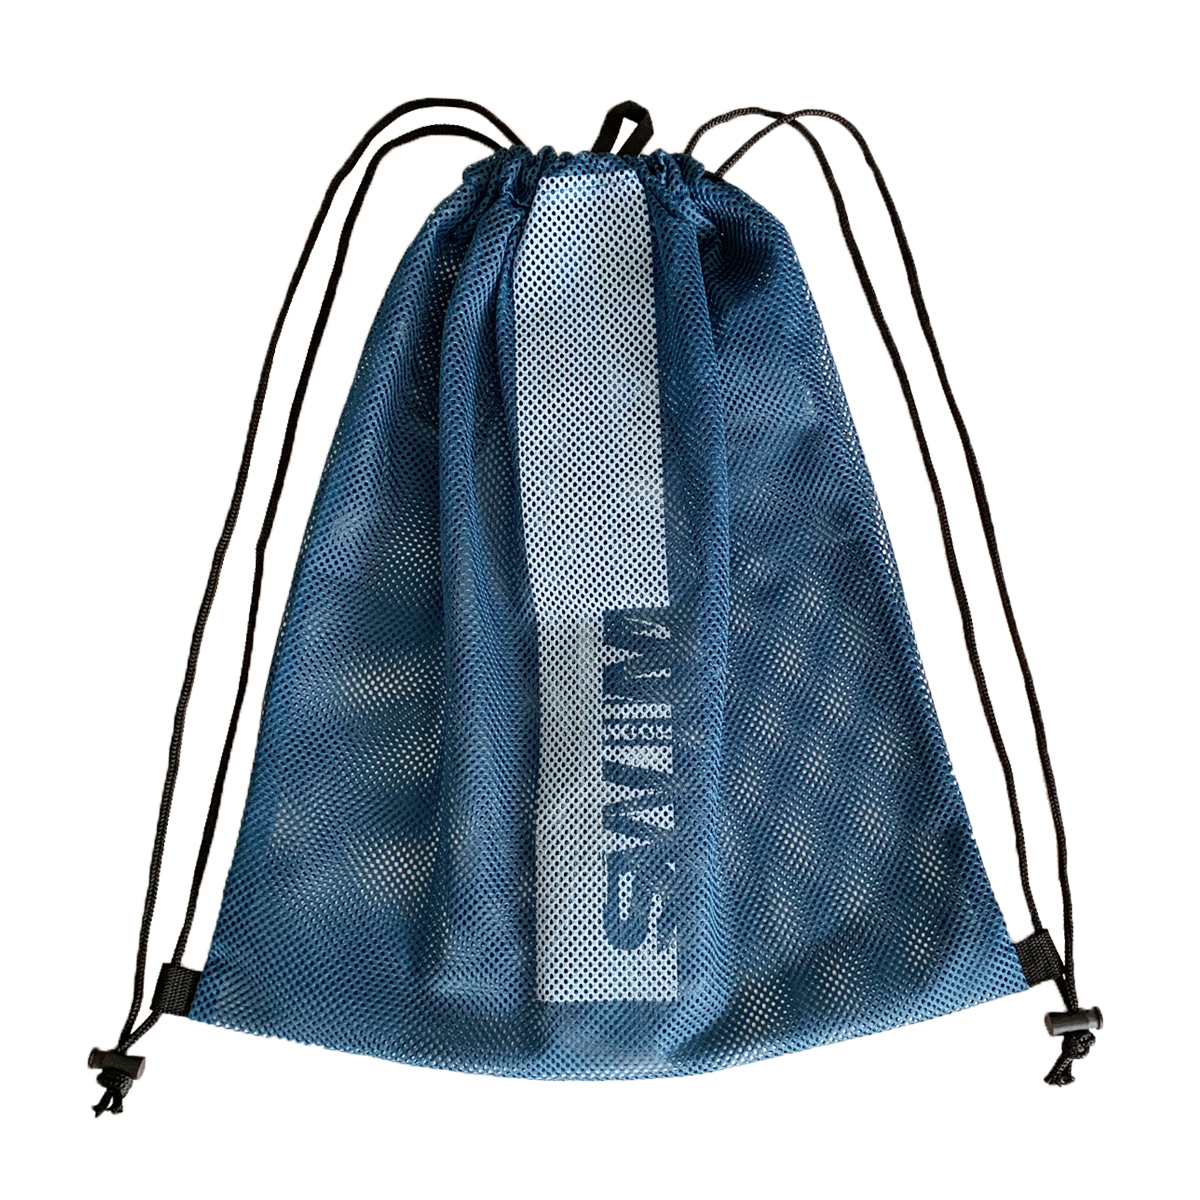 Сетчатый мешок для хранения и переноски плавательного инвентаря, пляжного отдыха "Mesh Bag 2.0"